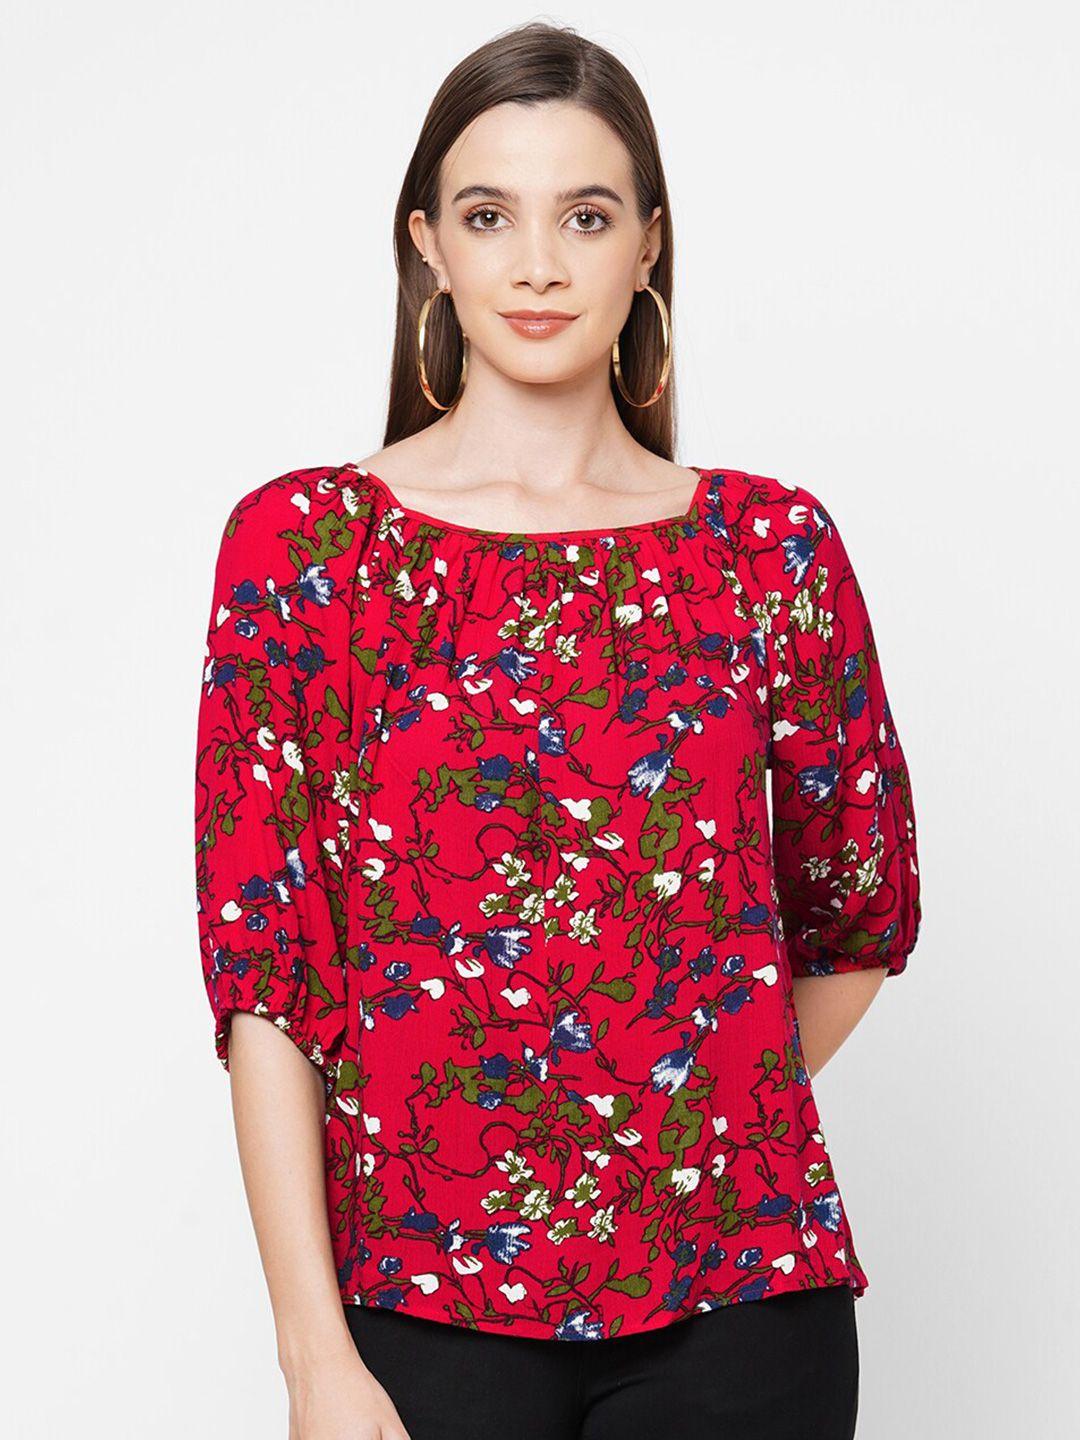 109f-red-floral-print-bishop-sleeves-regular-top